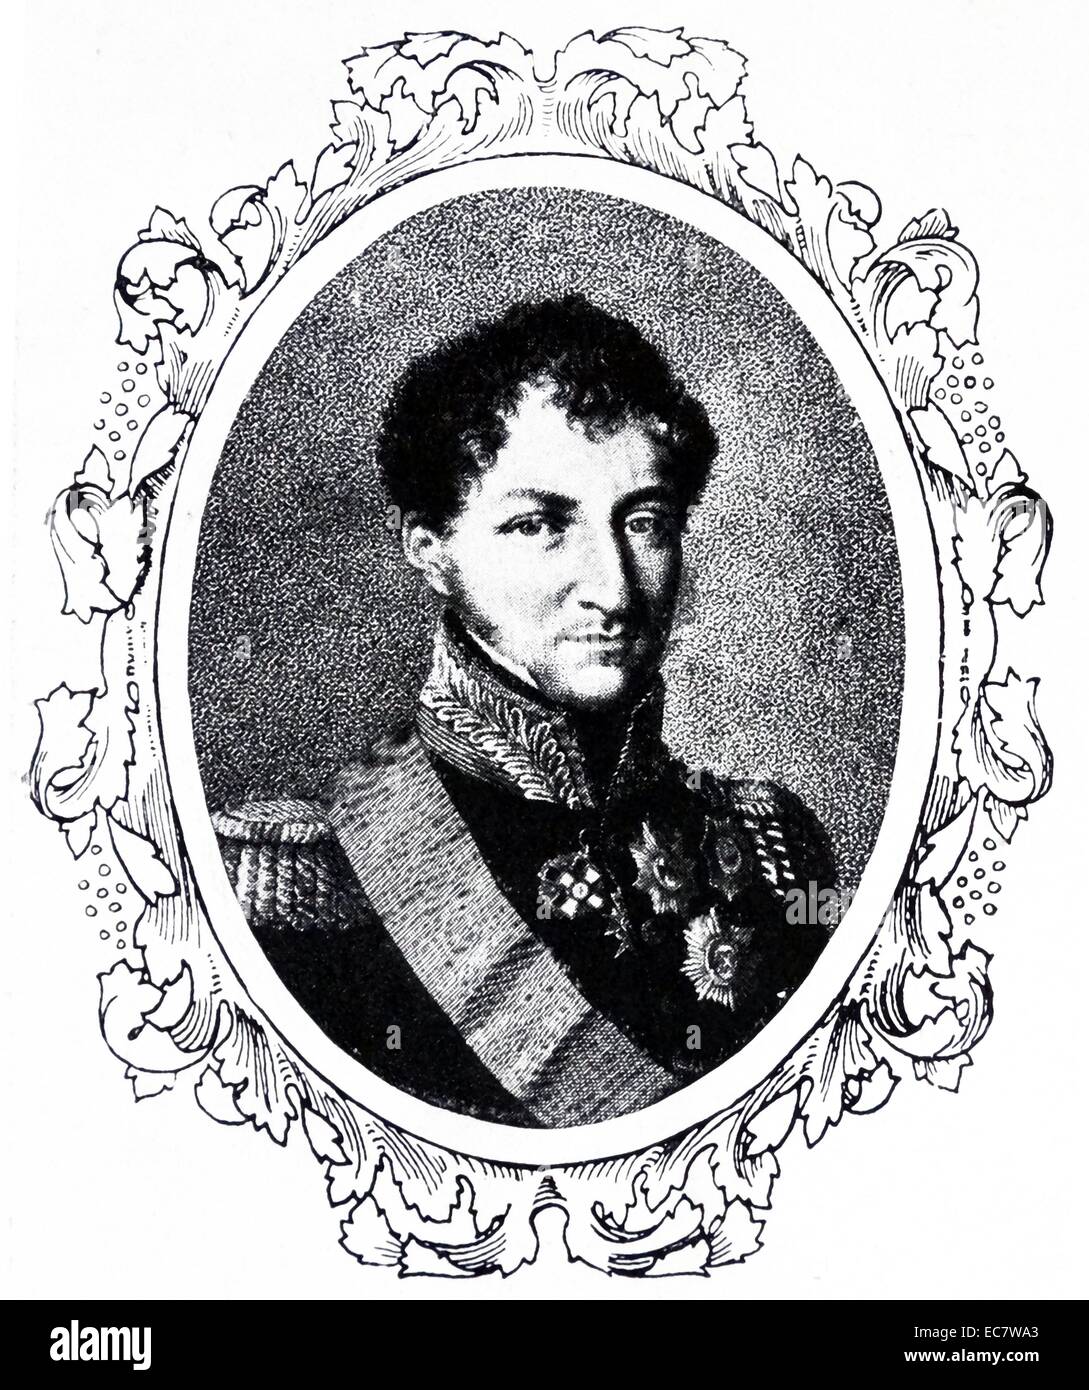 Retrato de Ernest I; Duque de Sajonia-coburgo y Gotha (1784 - 29 de enero de 1844), el padre del Príncipe Alberto el consorte de la Reina Victoria Foto de stock